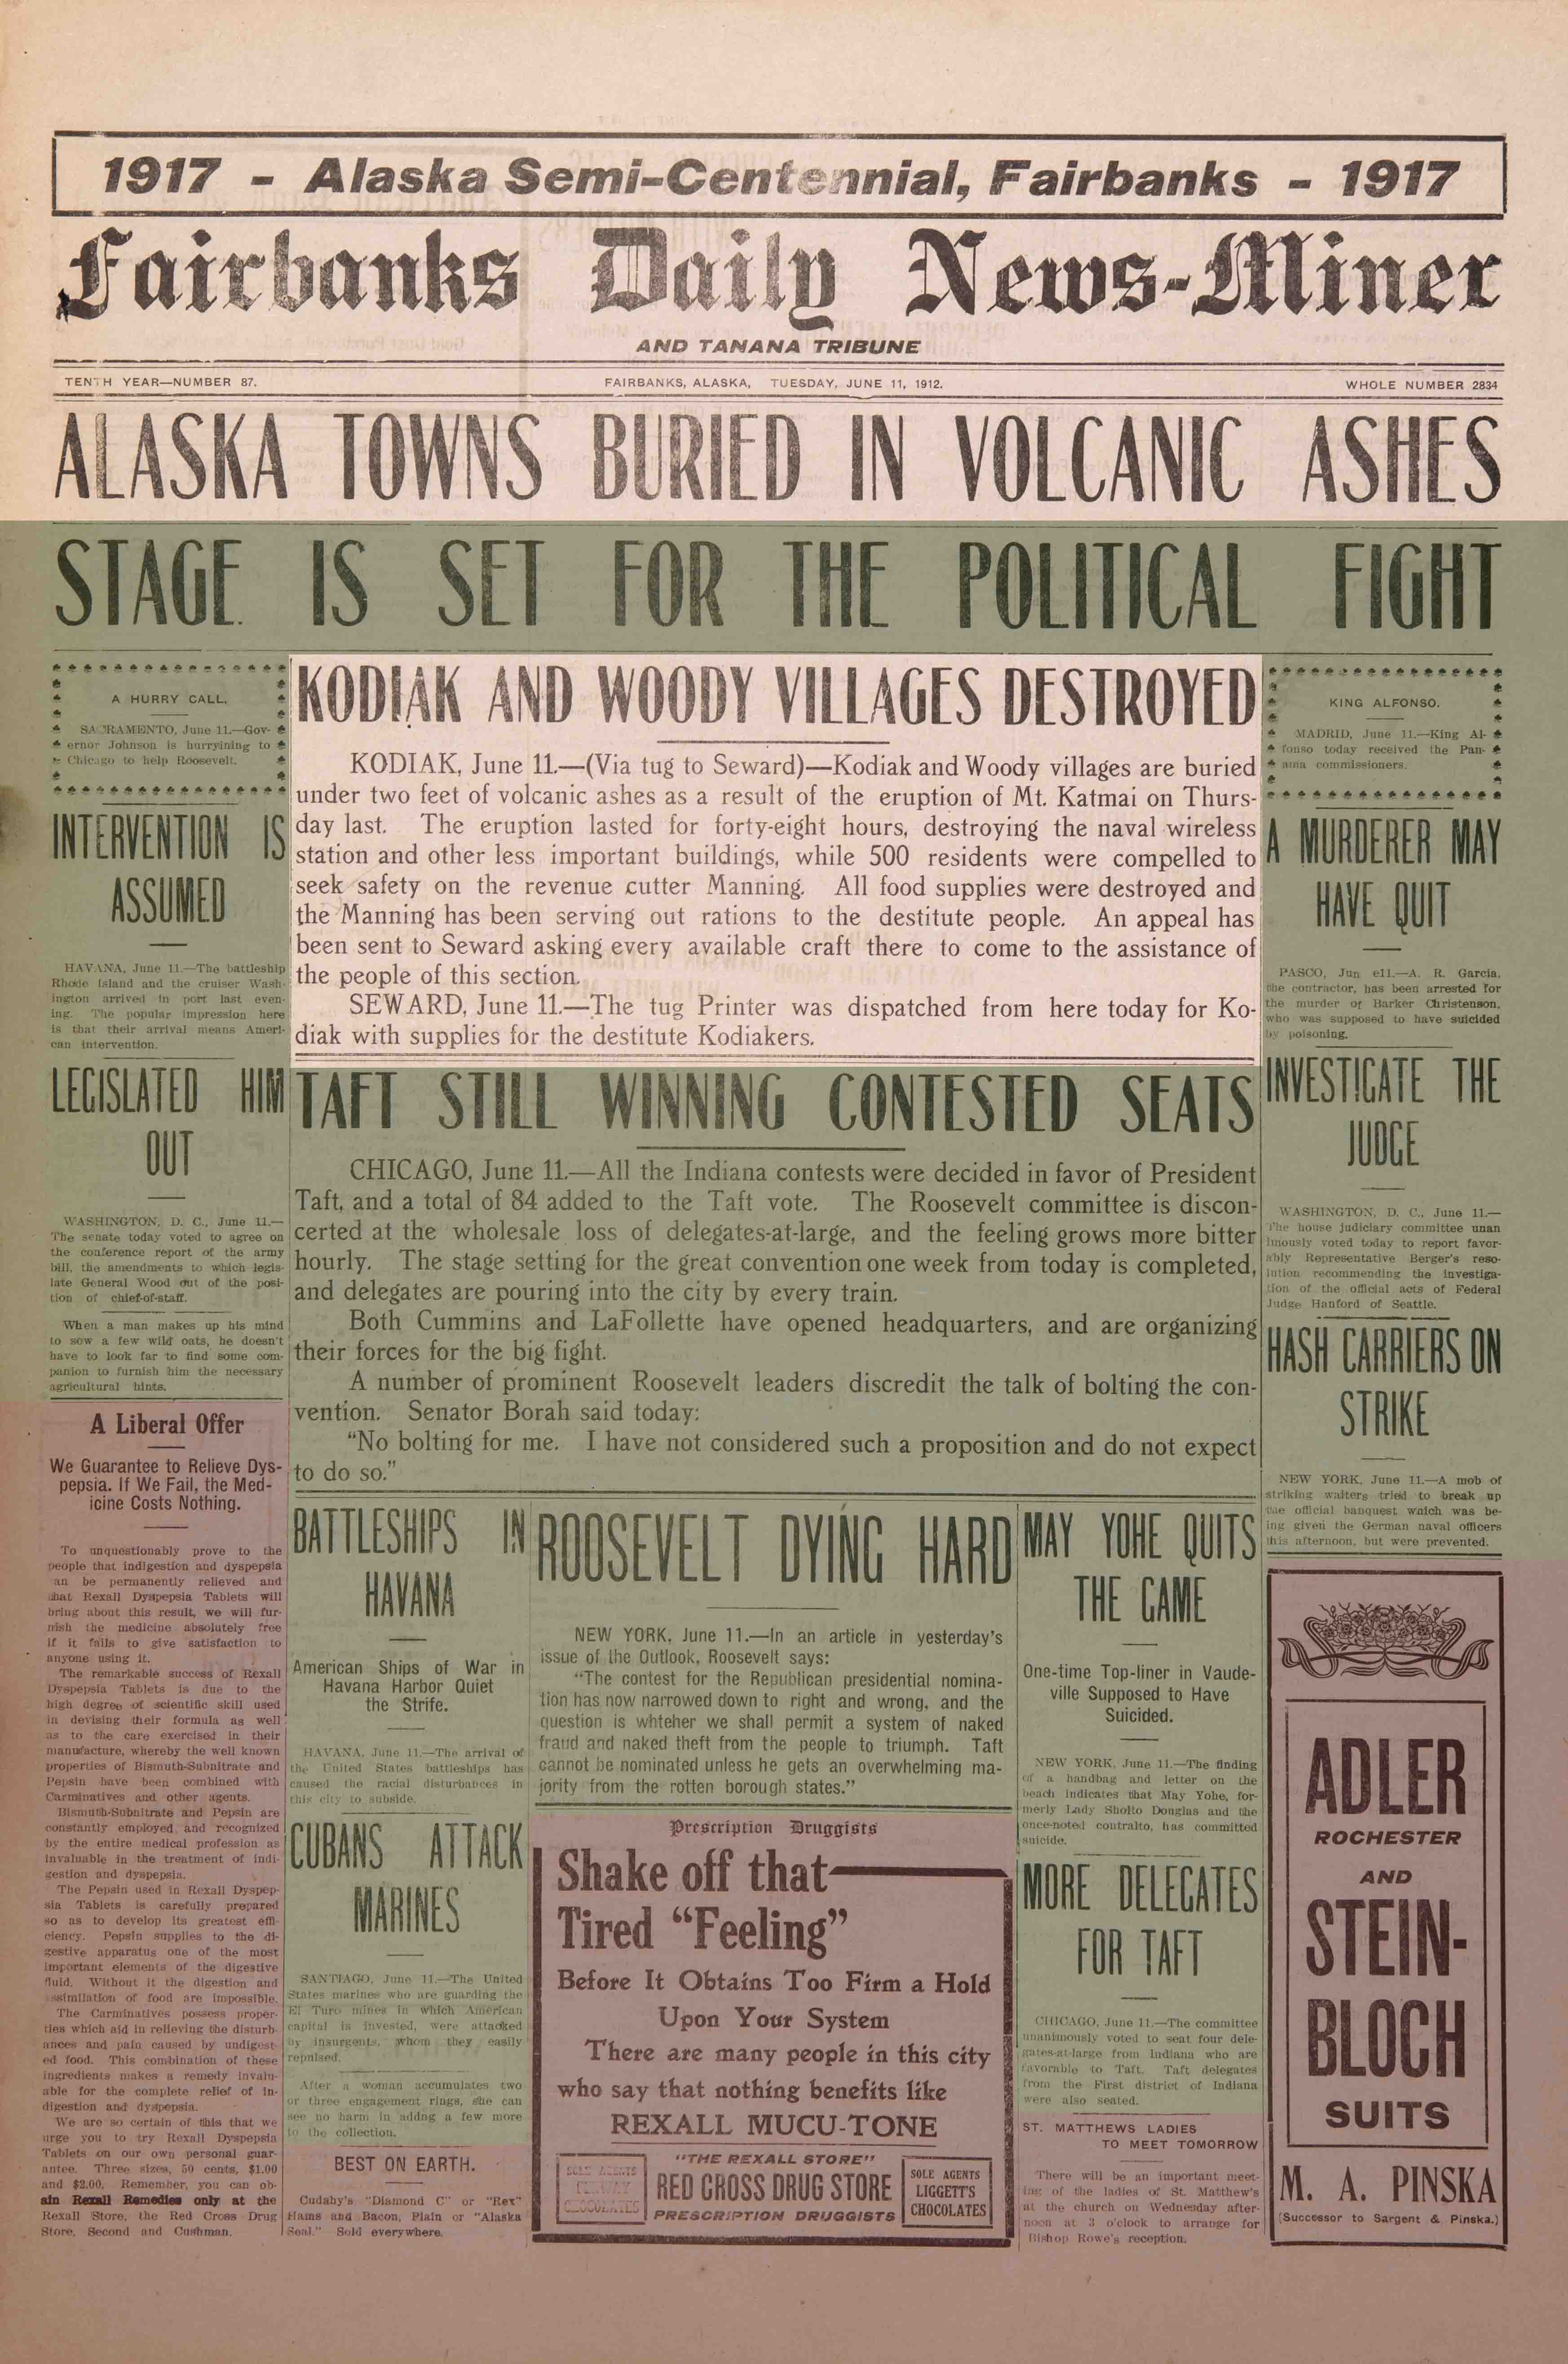 1912 June 11, Fairbanks Daily News-Miner (pg 1)